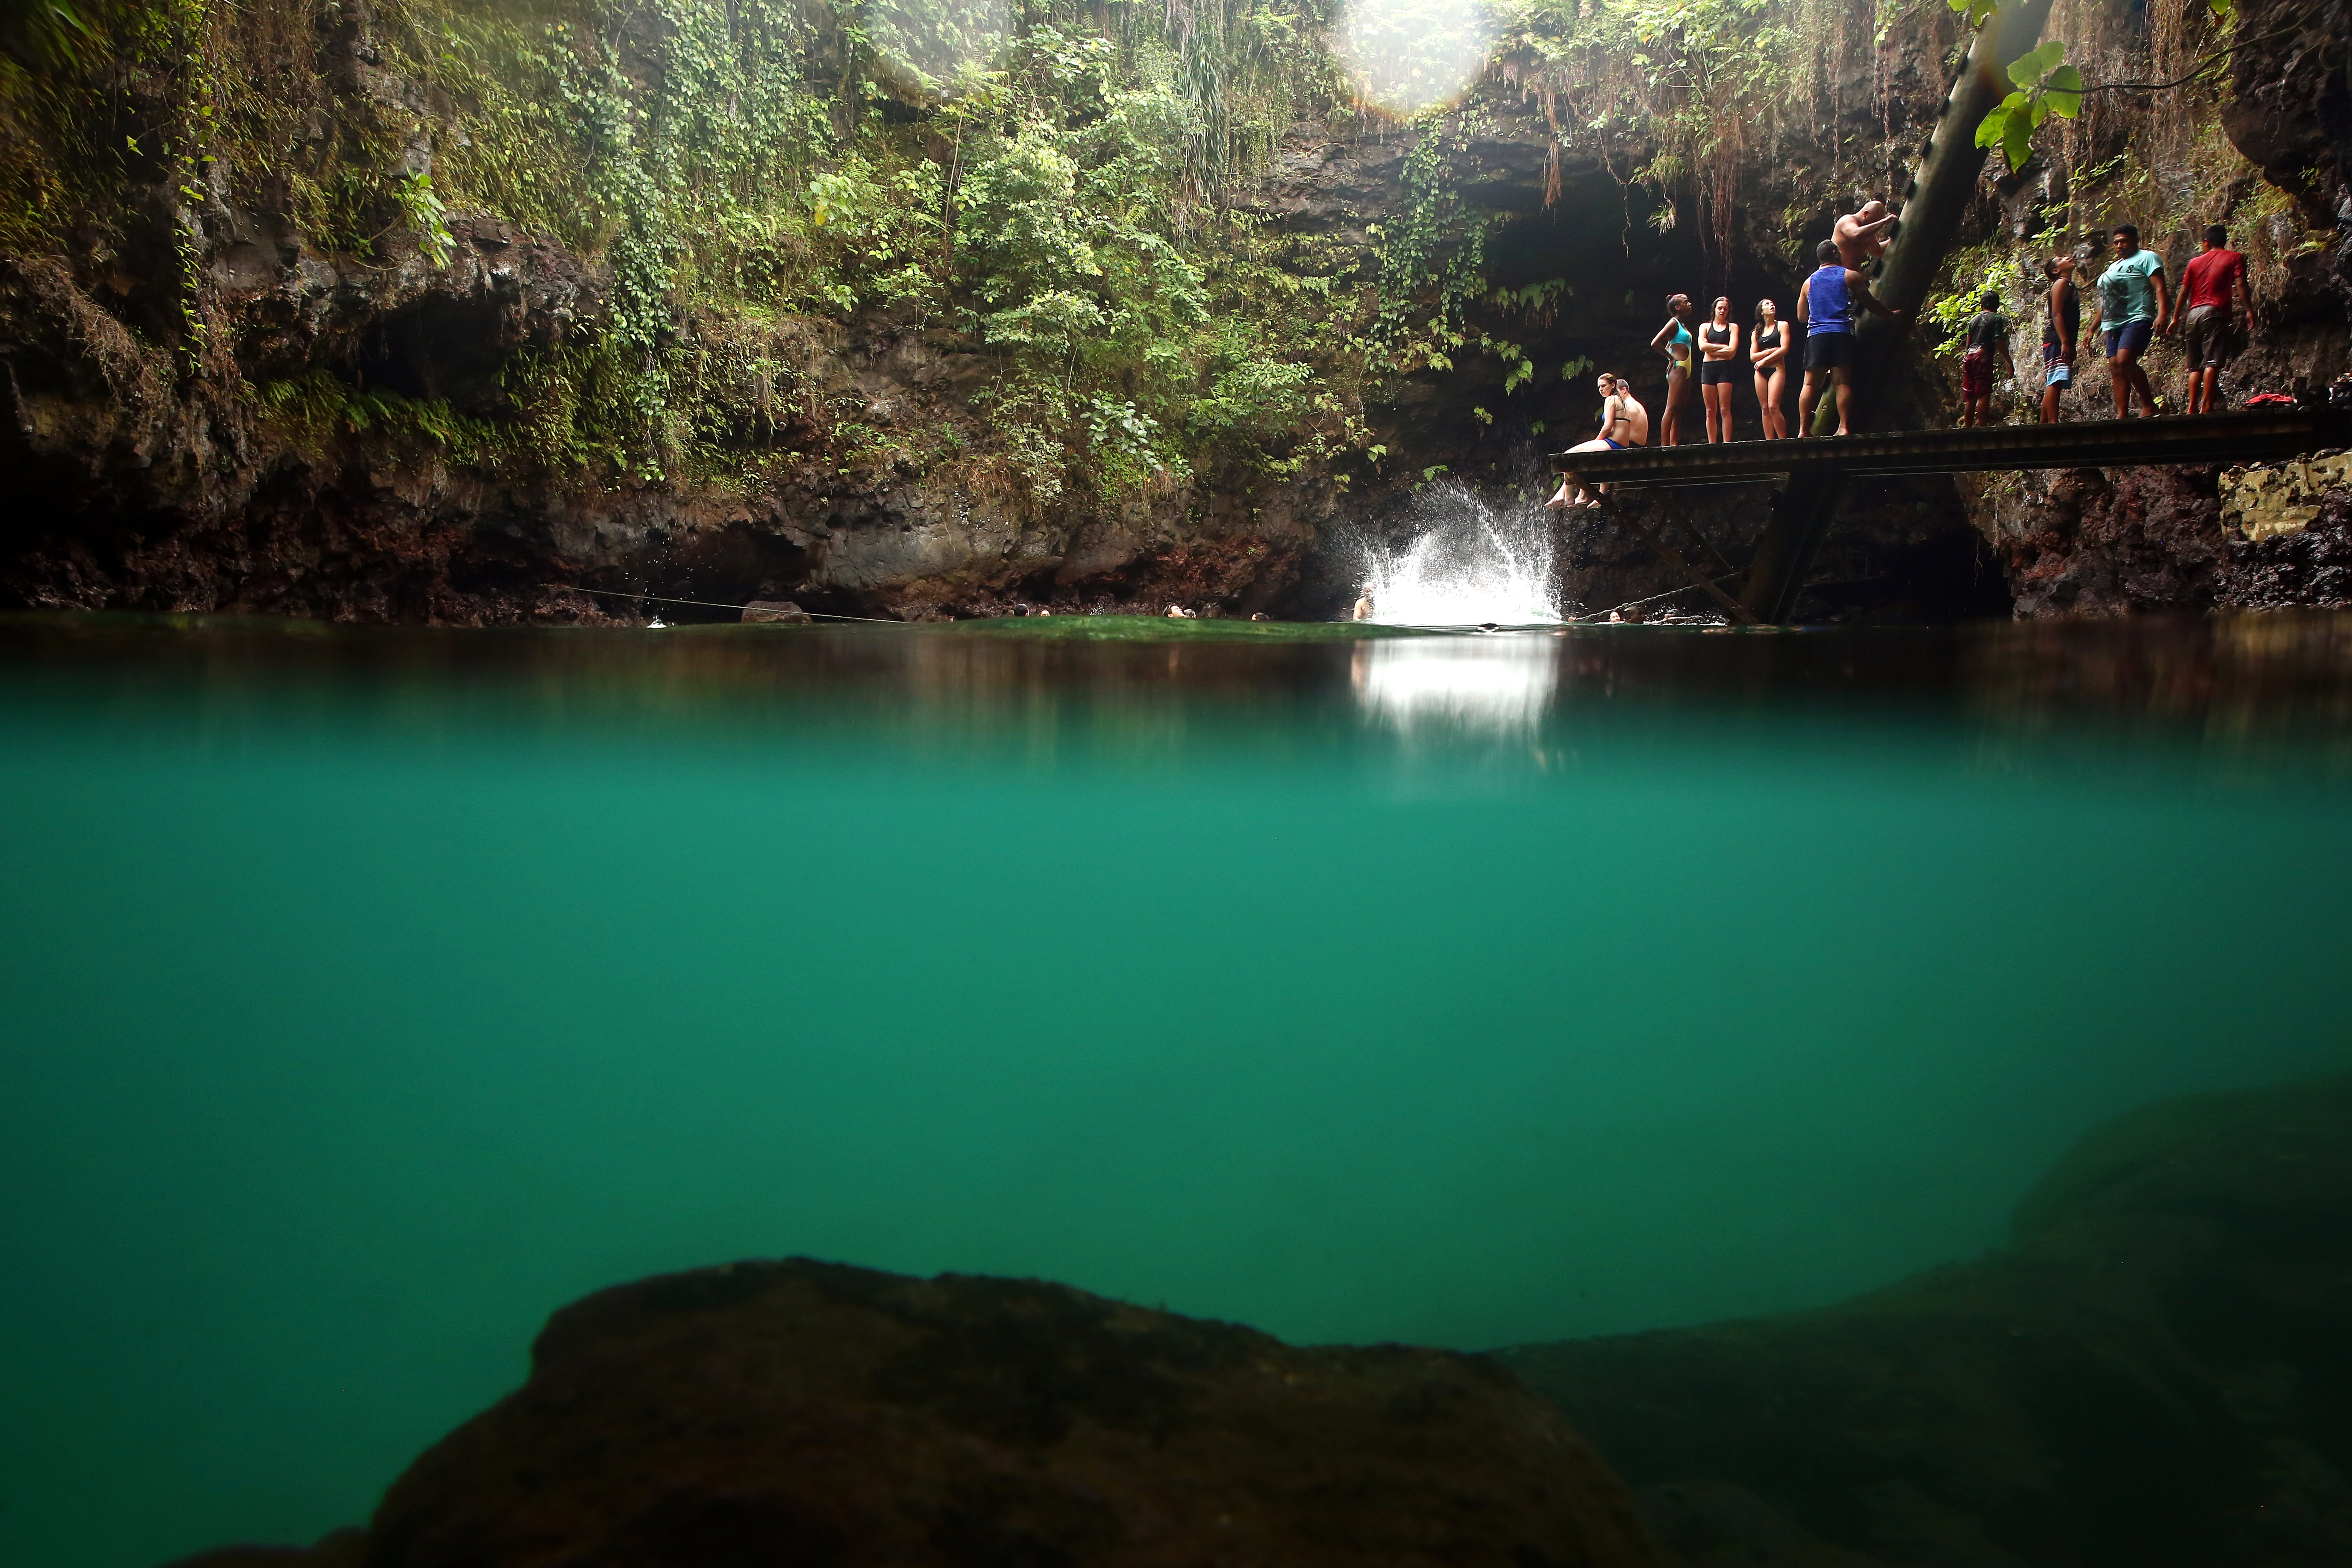 Днес ще ви разходим до един красив и екзотичен басейн. Той  е разположен на вулканичен остров и предлага на посетителите си едно от  най-добрите места за почивка. То Суа, в превод означава "голяма дупка", се намира в село Лотофага, на южното крайбрежие на остров Уполу в Самоа. Когато вулканът изригнал, голяма част от земята пропада. В резултат на това се образува тази близо 30-метрова дупка.В студените води бихте могли  да се спуснете  с помощта на стълба. Ако обаче сте много нетърпеливи - може  да скочите директно в него. Природата на това райско кътче е уникална. Зеленината е в изобилие, а водите – кристално чисти.Пълно е с тропически риби, а дъното е покрито с мек пясък. Поредица от канали излизат от басейна и водят директно към южната част на Тихия океан. Благодарение на тях басейнът никога не пресъхва.